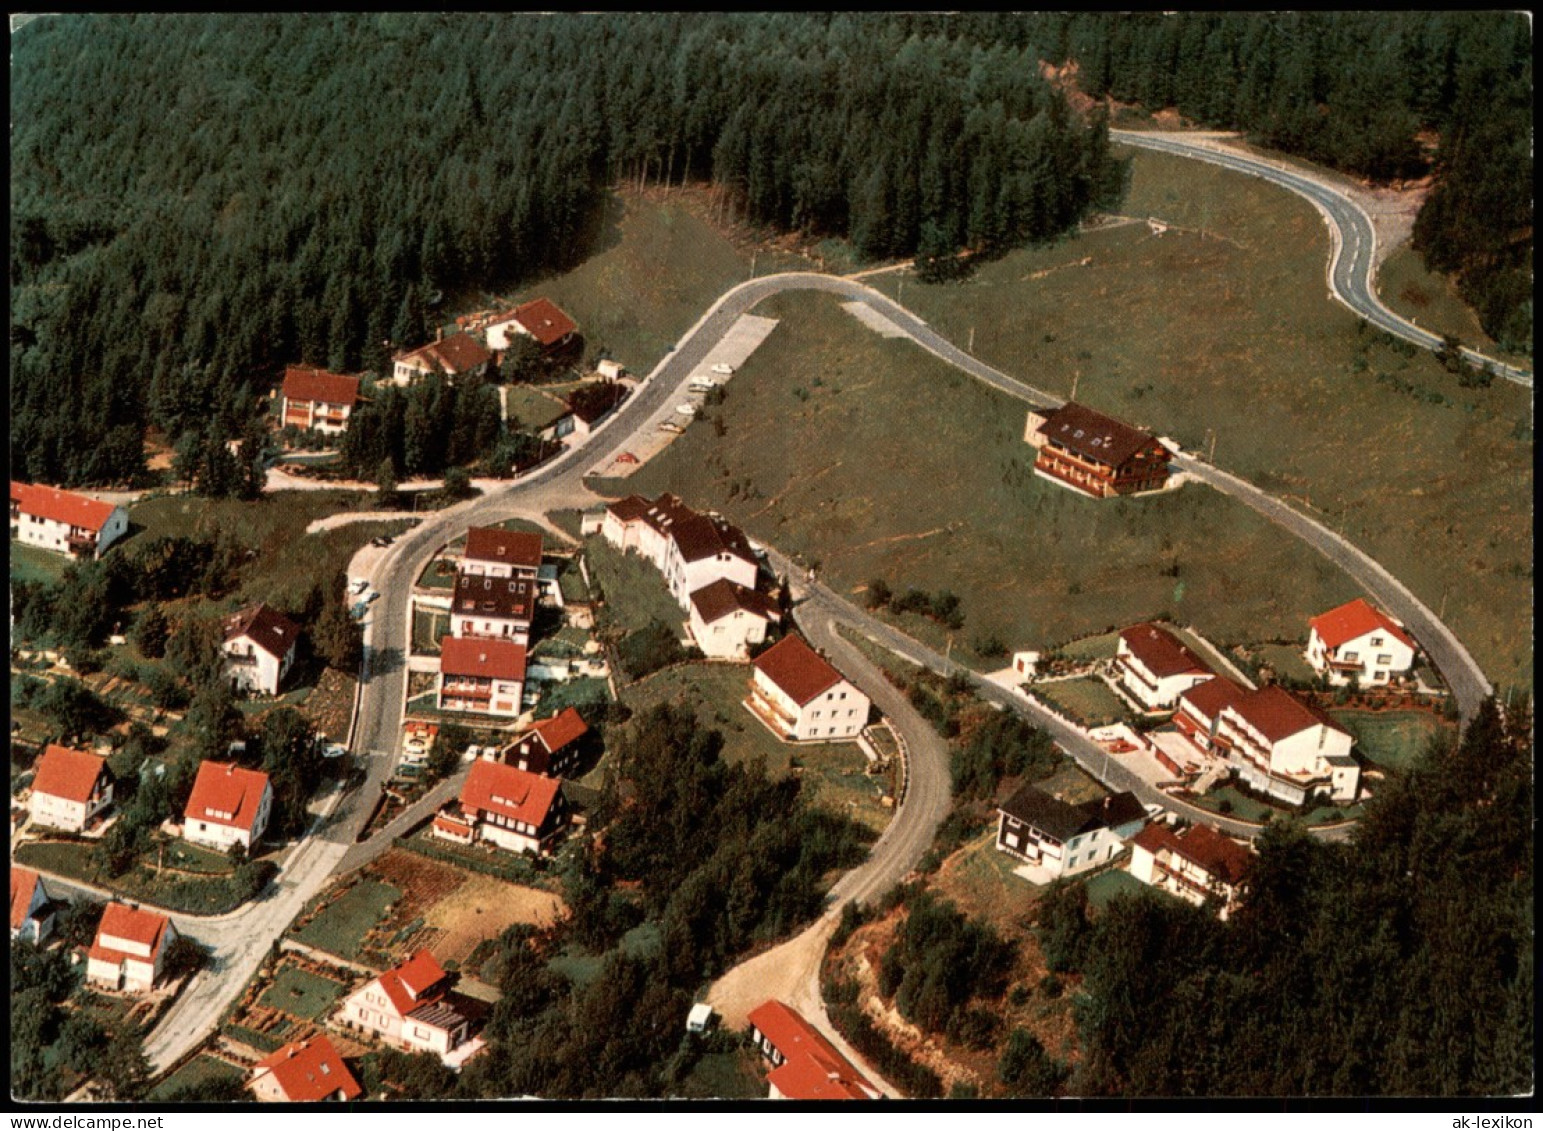 Ansichtskarte Bad Grund (Harz) Luftbild Luftaufnahme Wohngebiet 1975 - Bad Grund